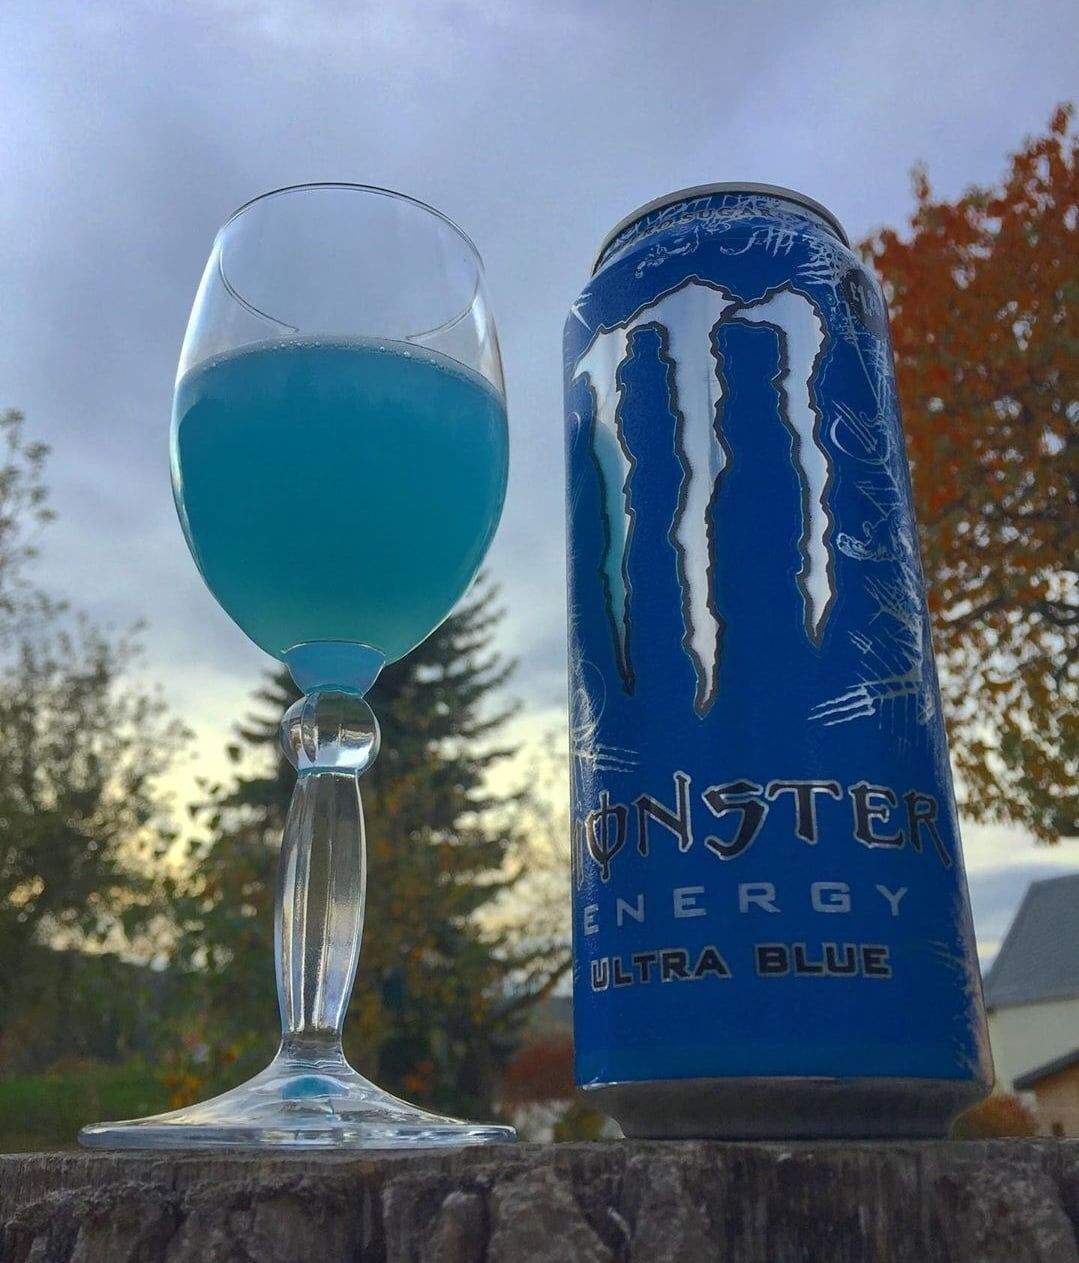 Monster Energy Ultra Blue PL-Monster-energy drink,energy drinks,monster,monster energy,new,soon